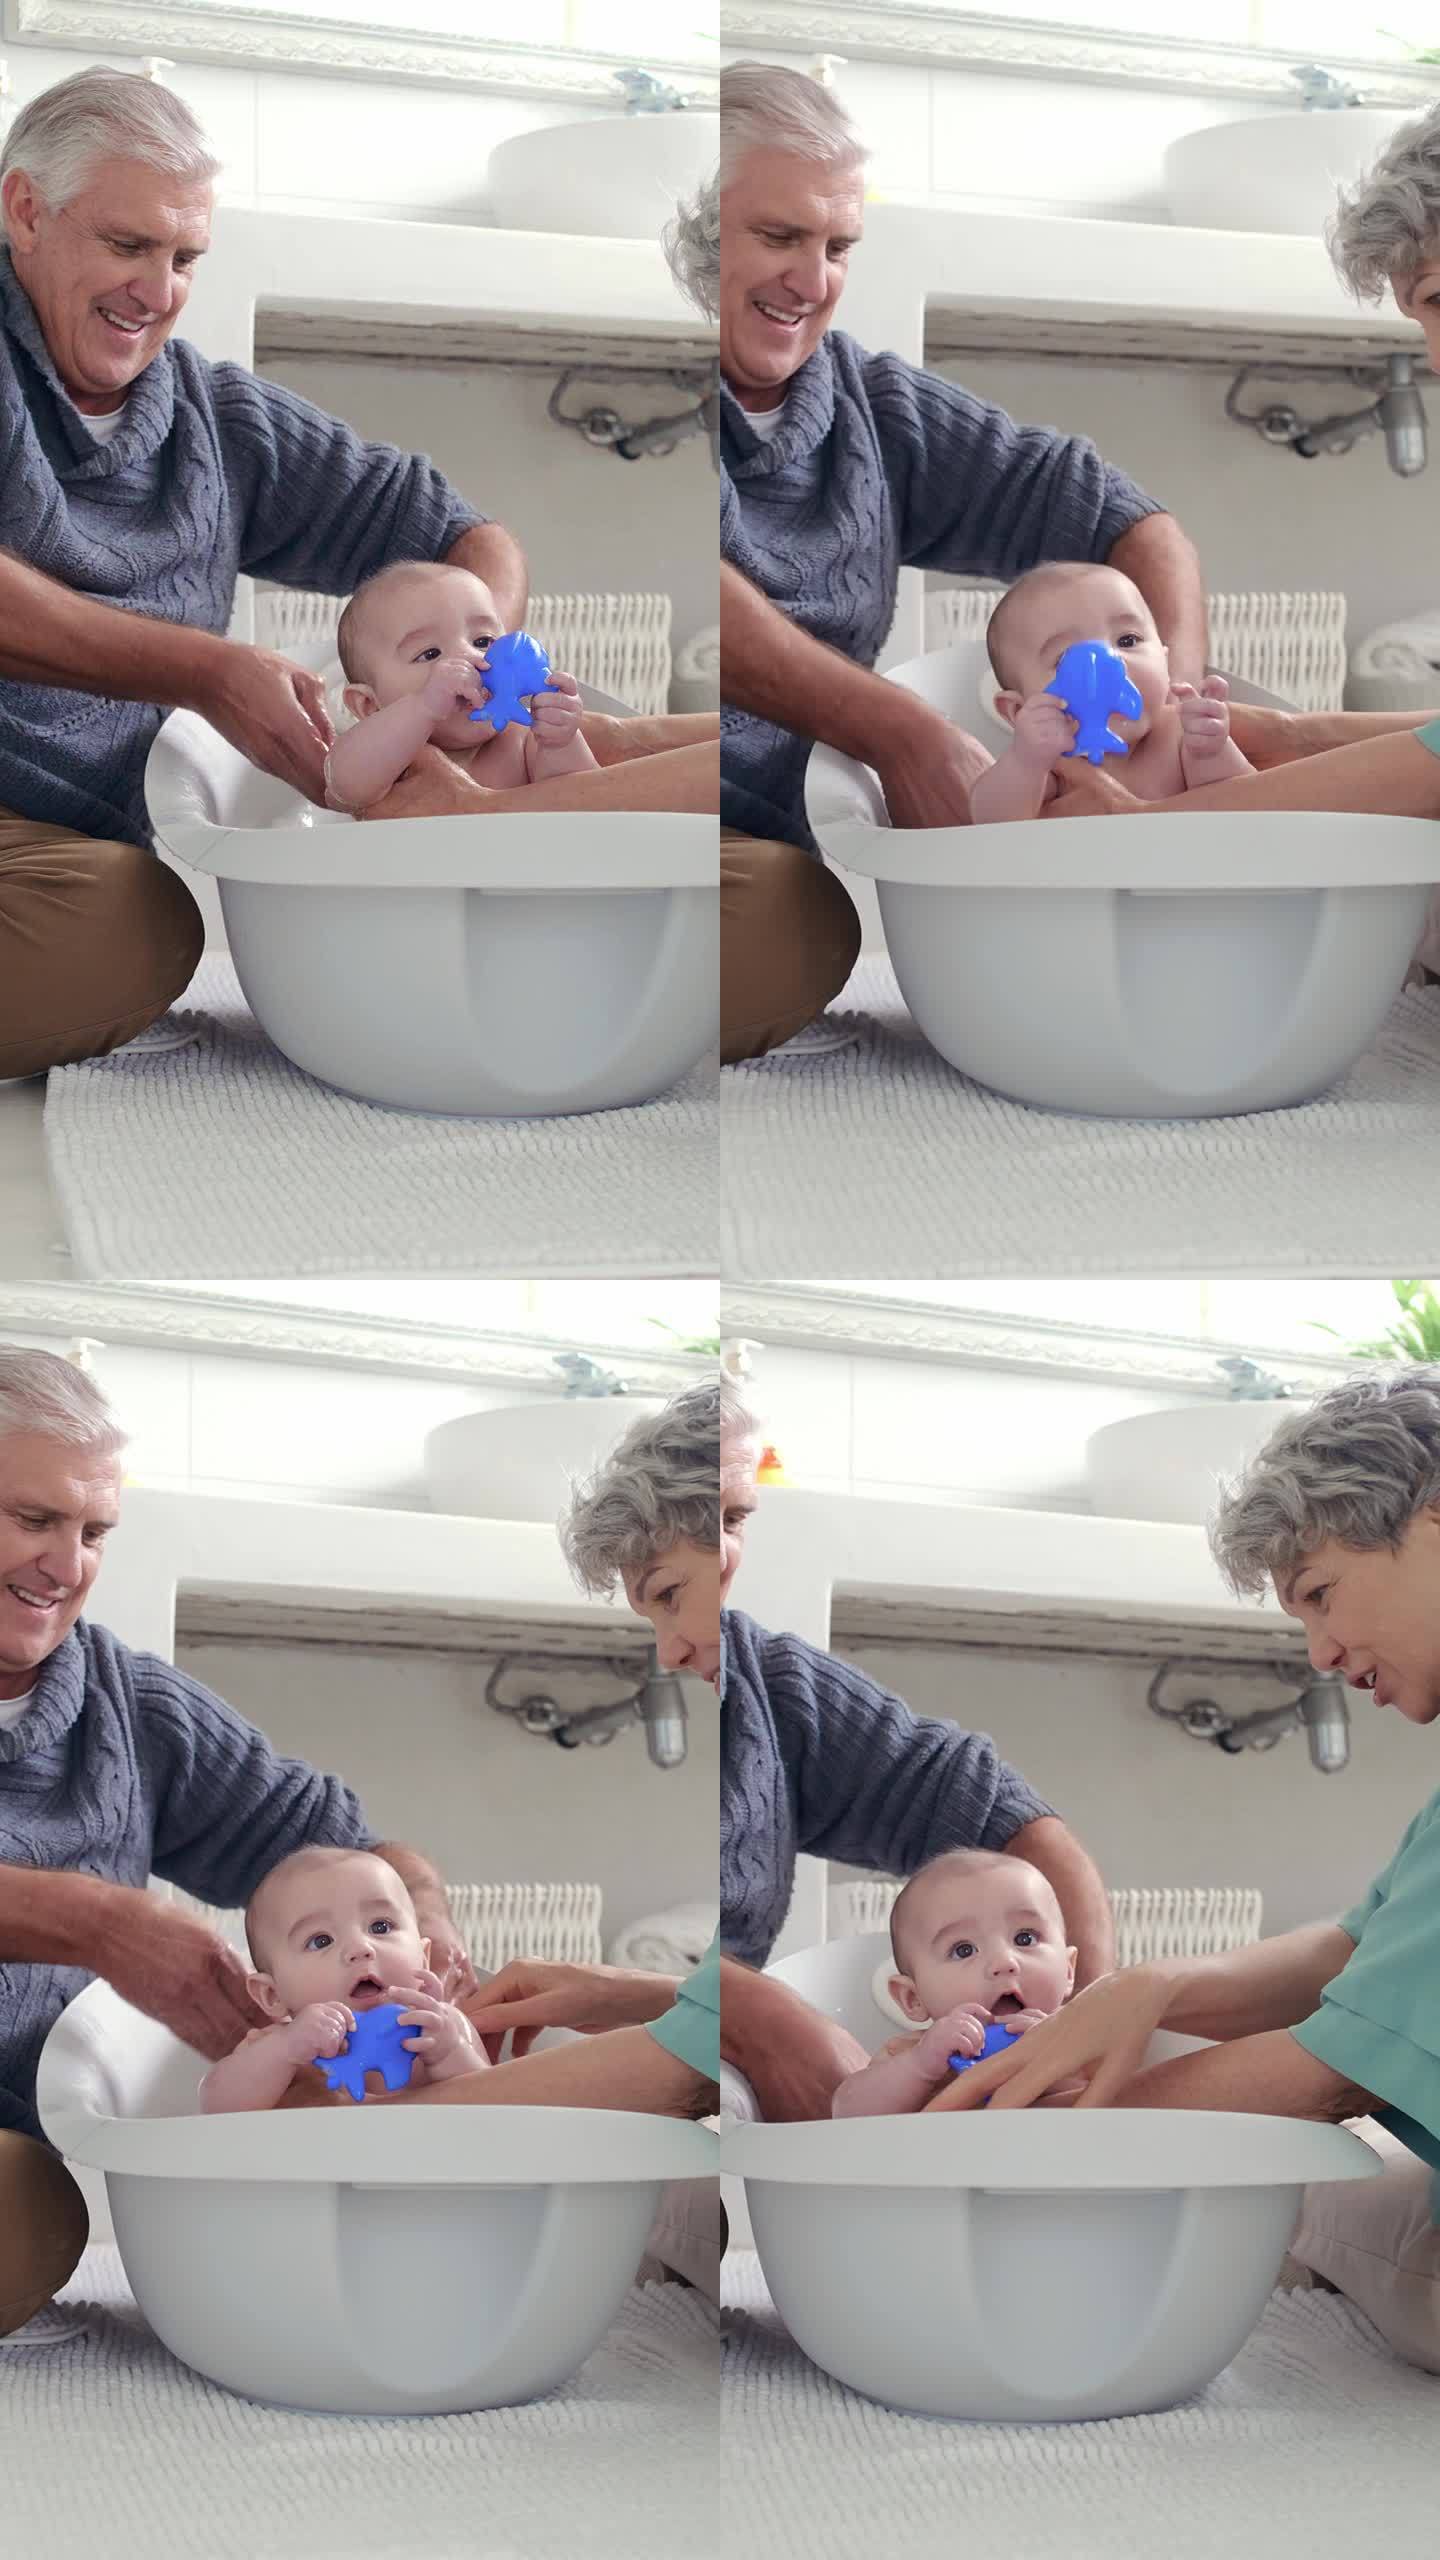 奶奶、爷爷和婴儿在浴室地板上洗澡，以保持卫生或照顾孩子。家庭，孩子和年长的祖父母或在房子里用水清洗新